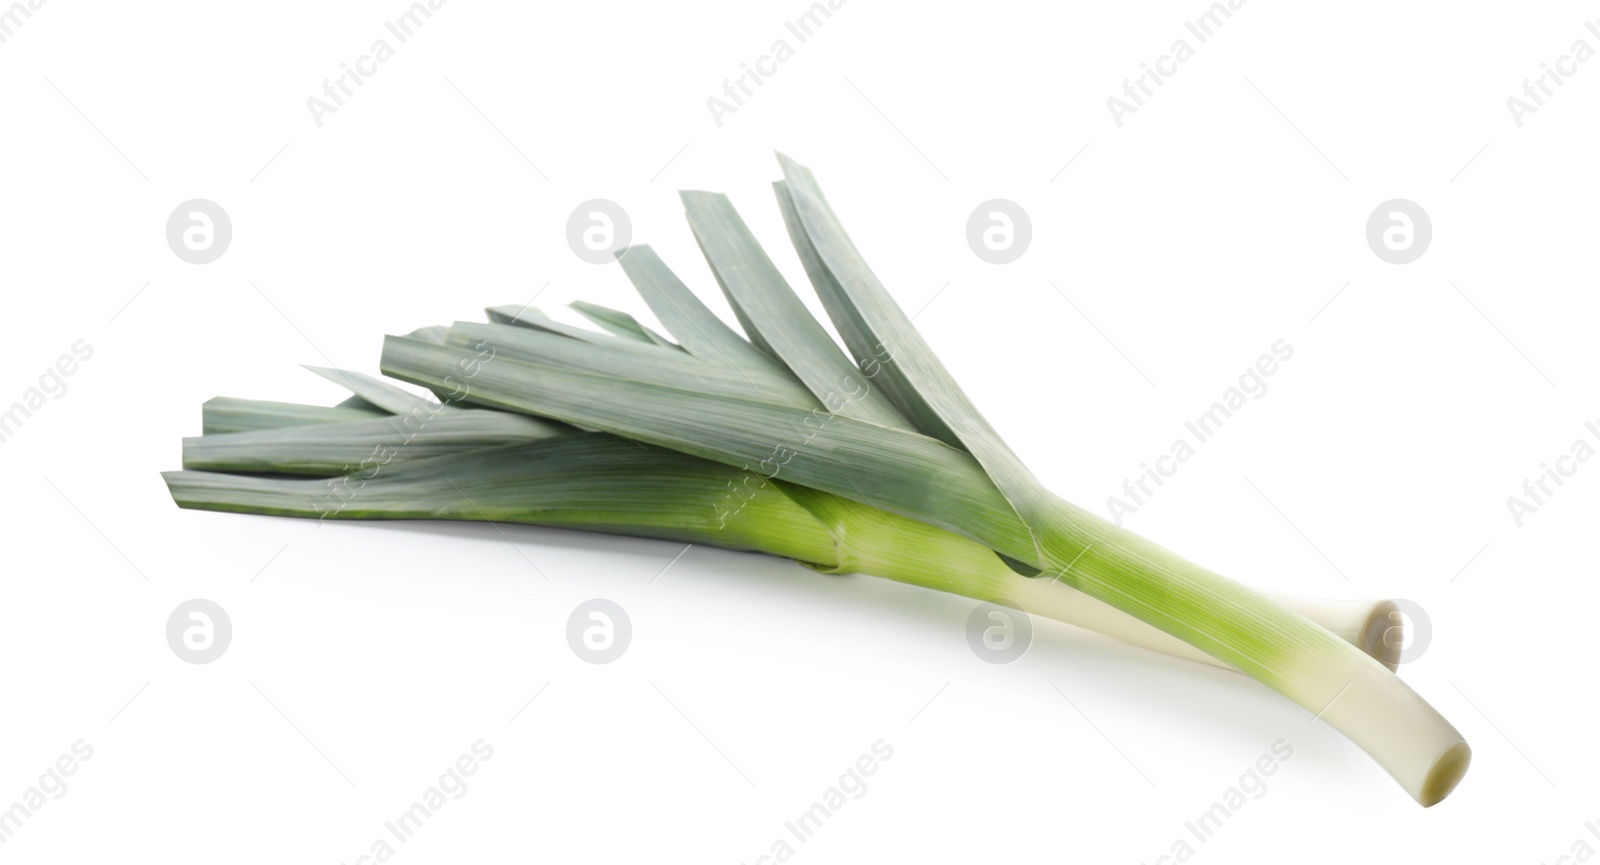 Photo of Fresh raw leeks on white background. Ripe onion